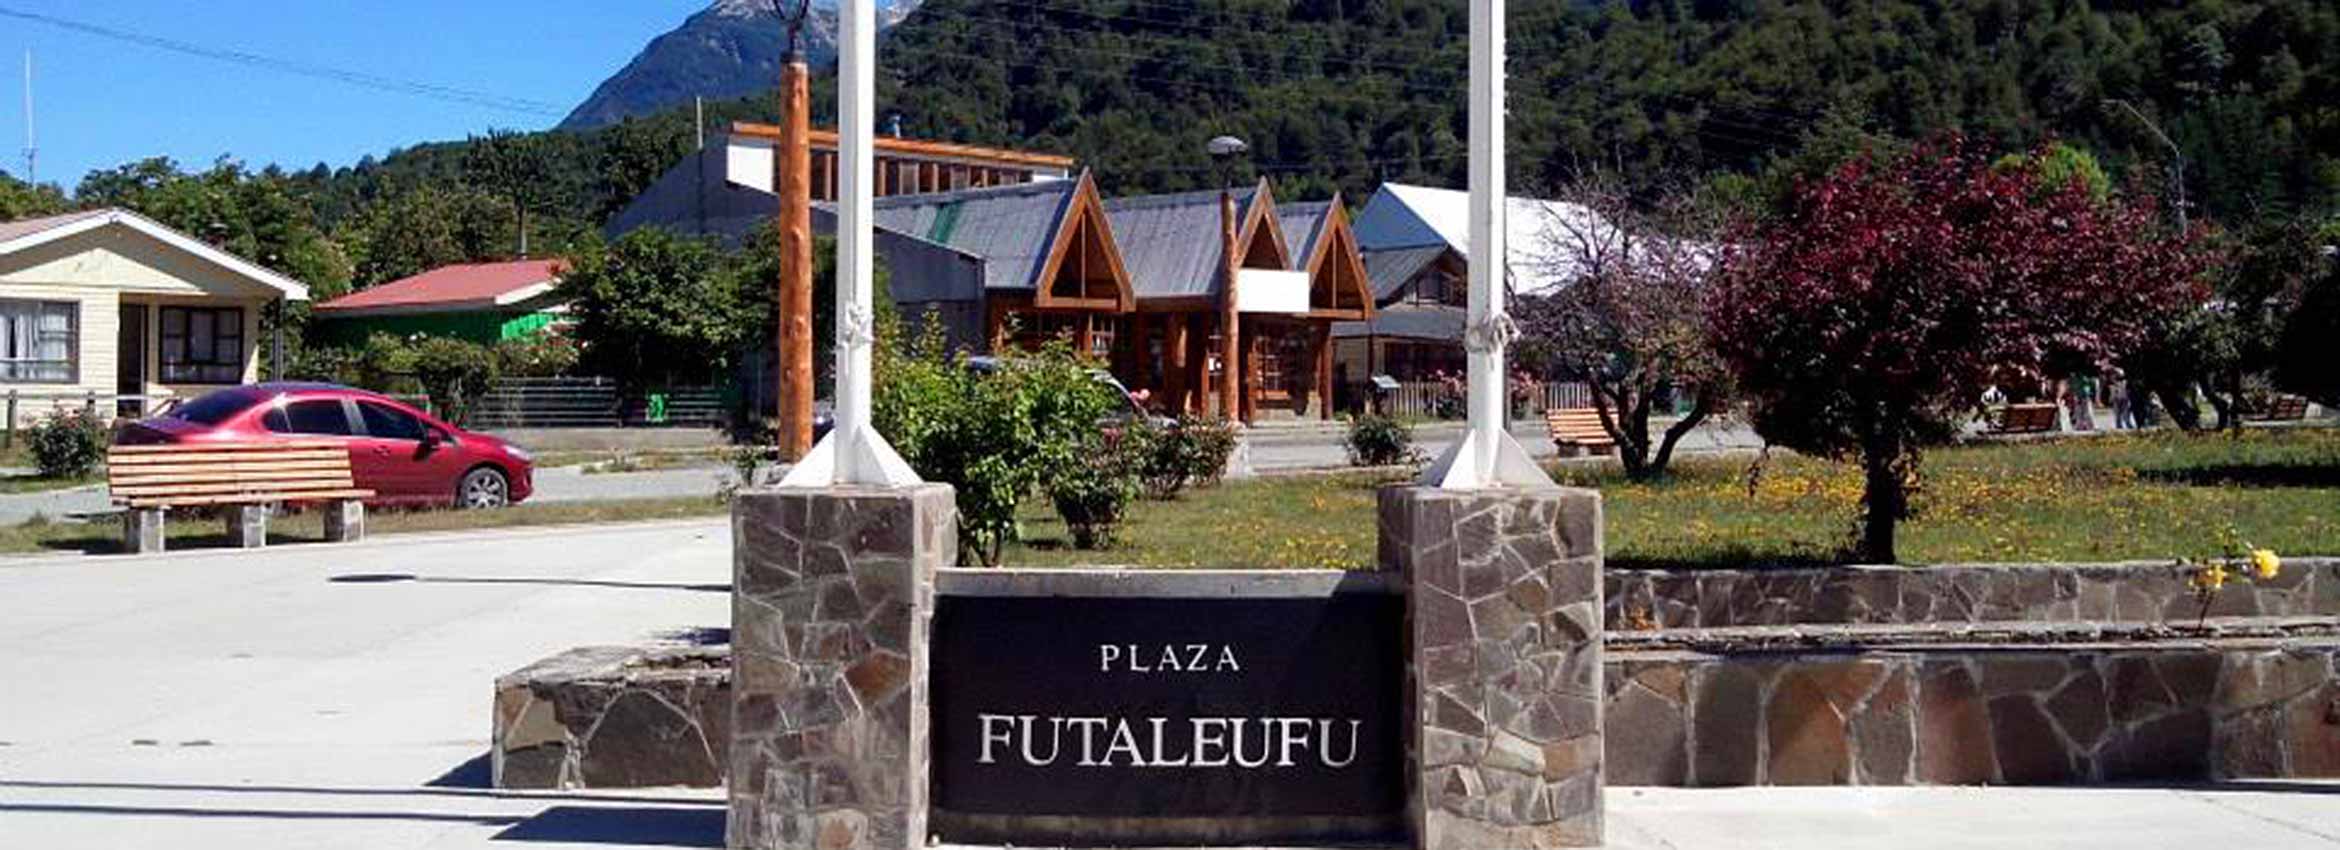 Praça Futaleufu-Chila